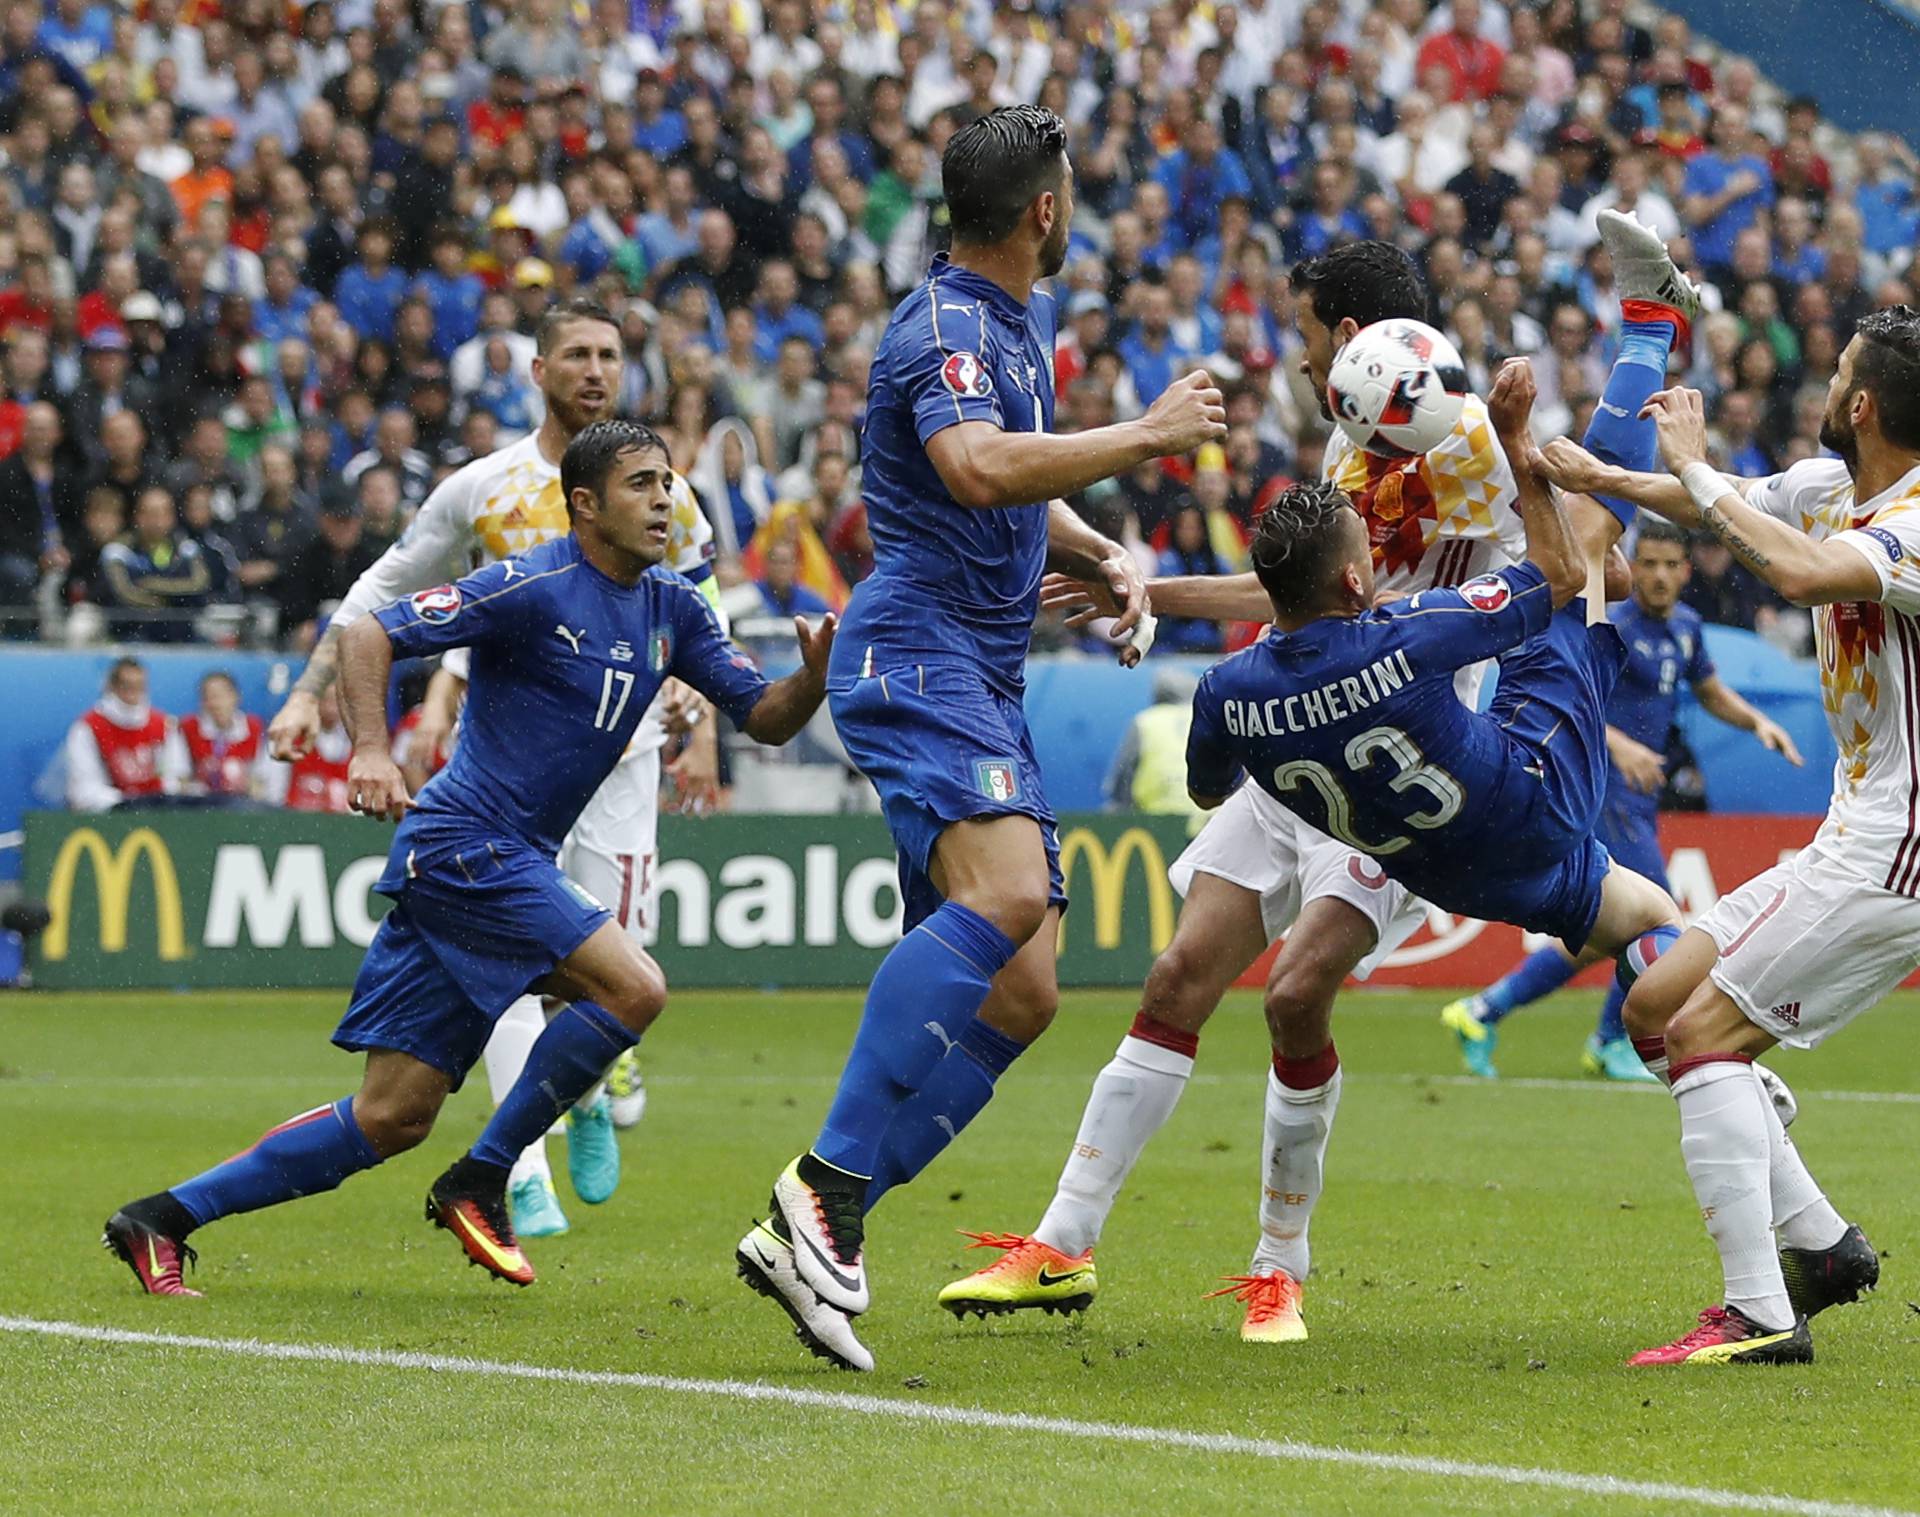 Italy v Spain - EURO 2016 - Round of 16